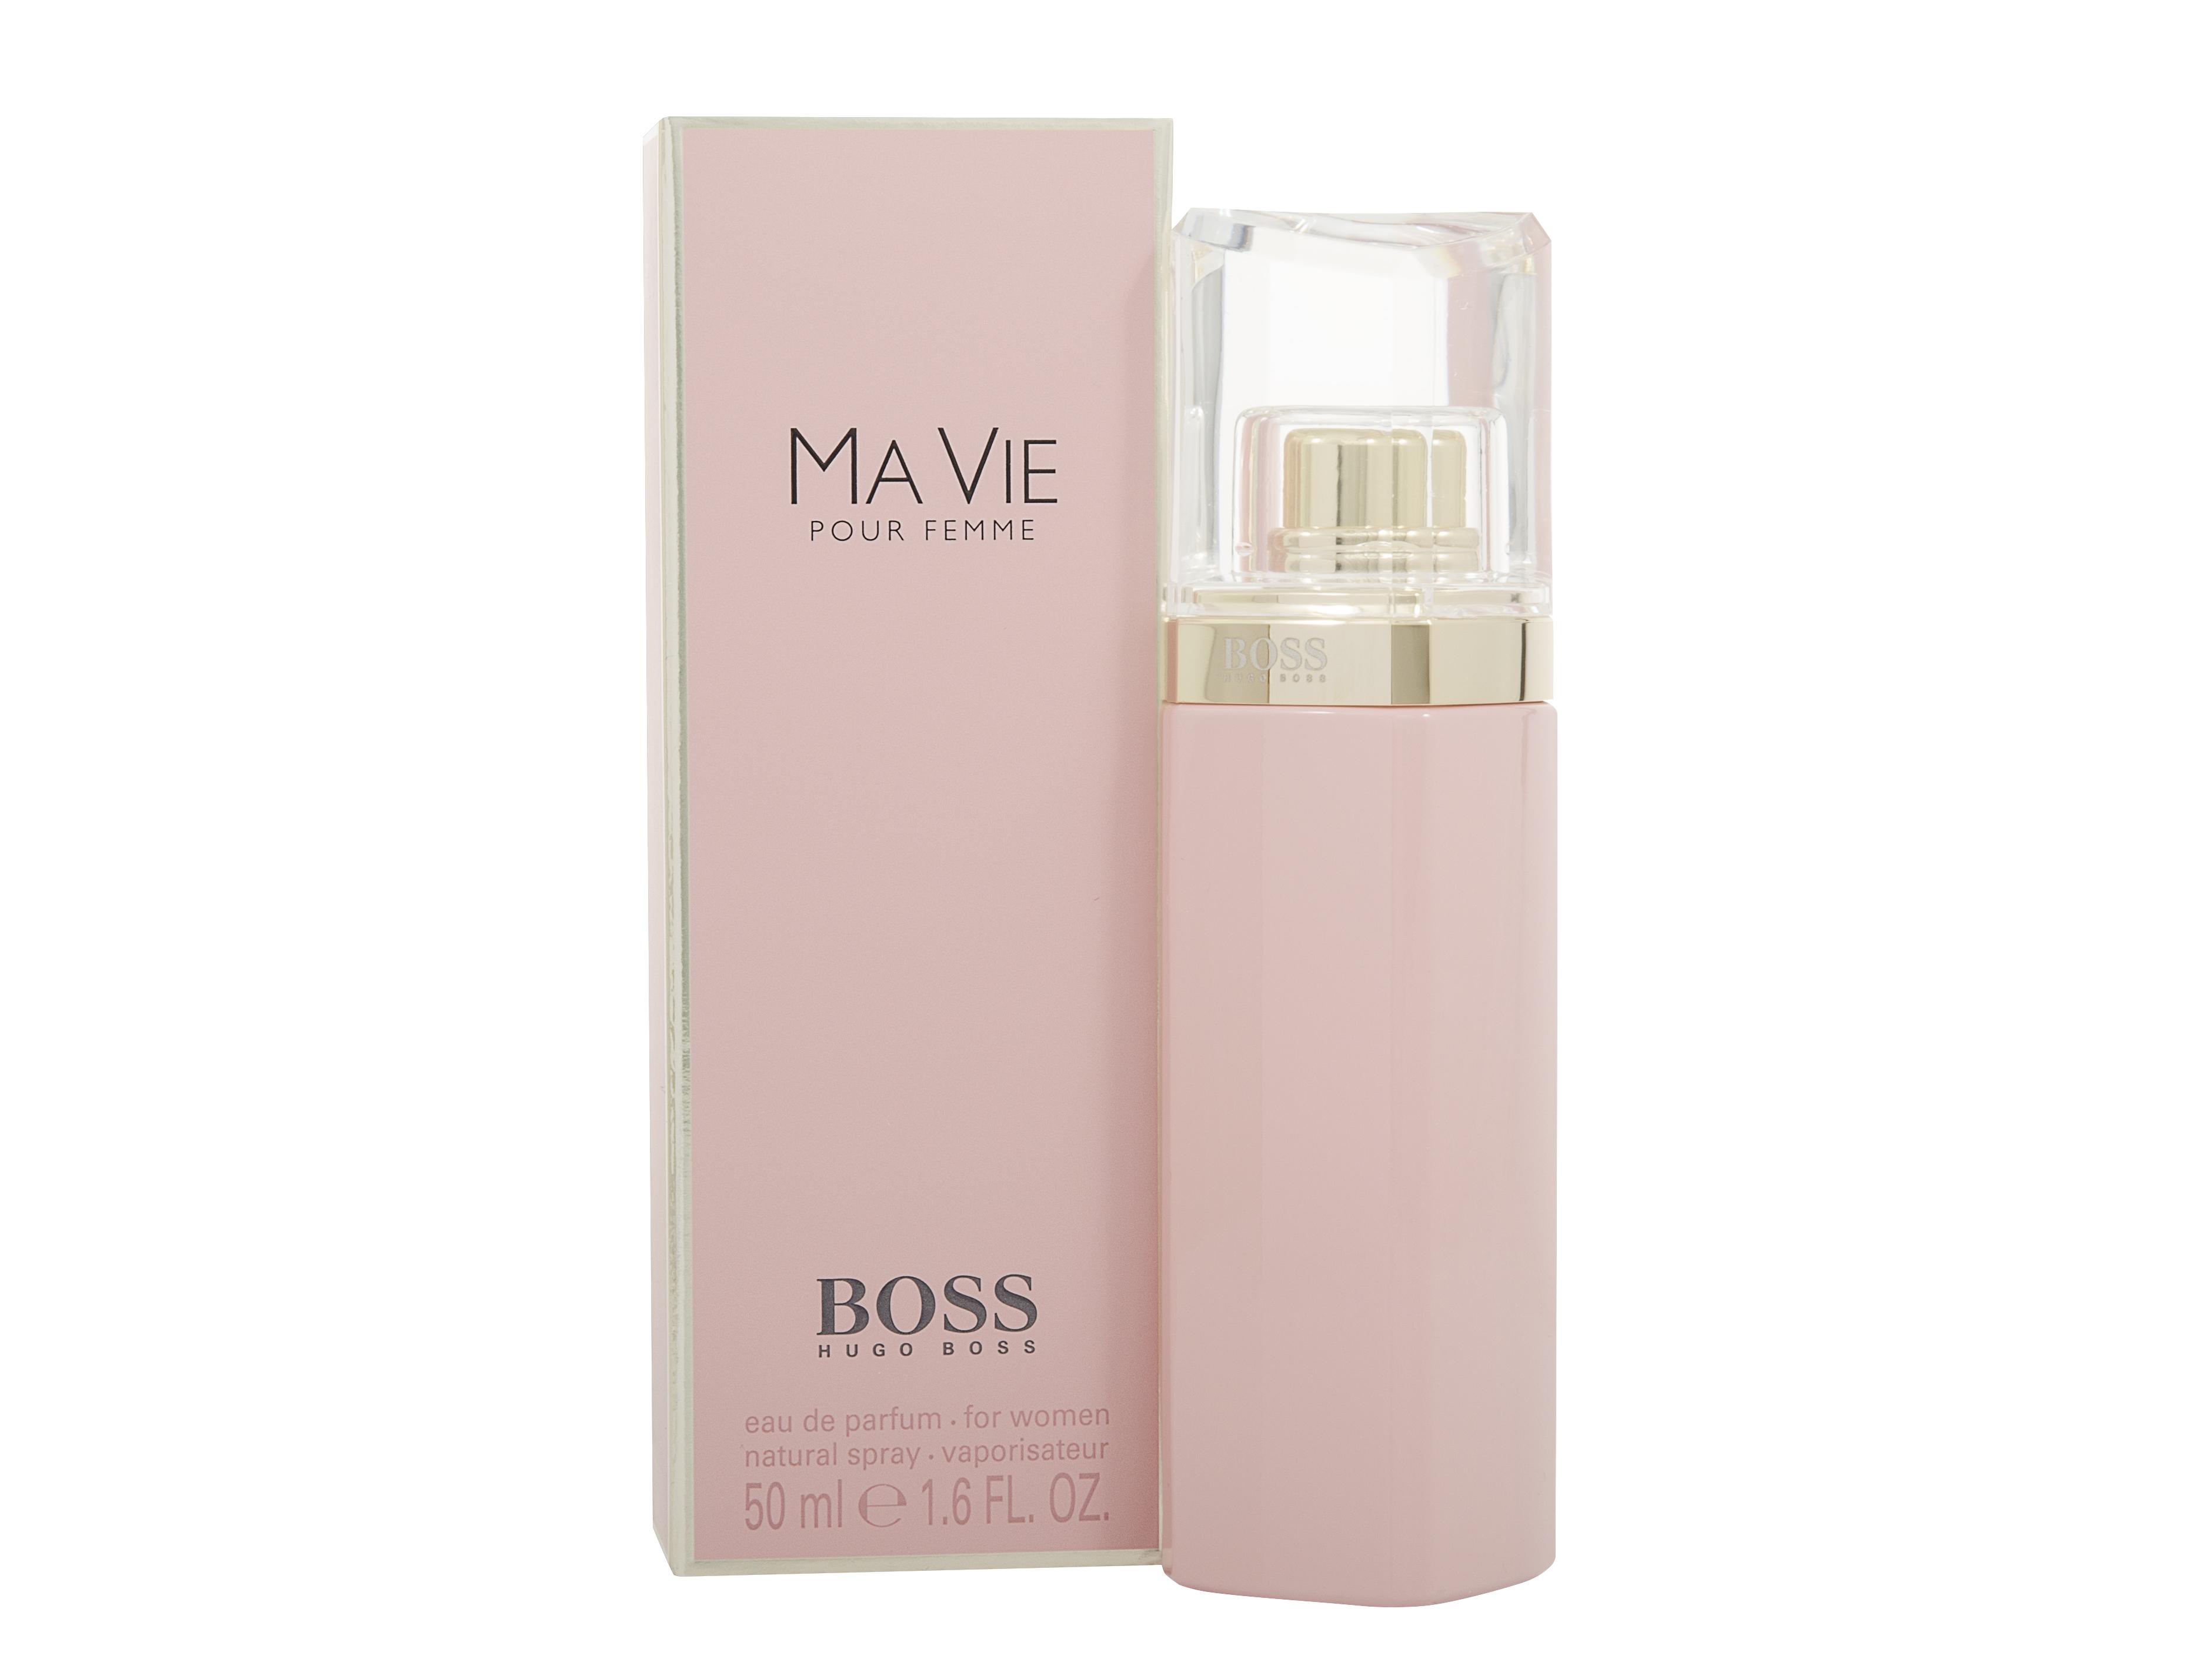 Hugo Boss Boss Ma Vie Eau de Parfum 50ml Spray